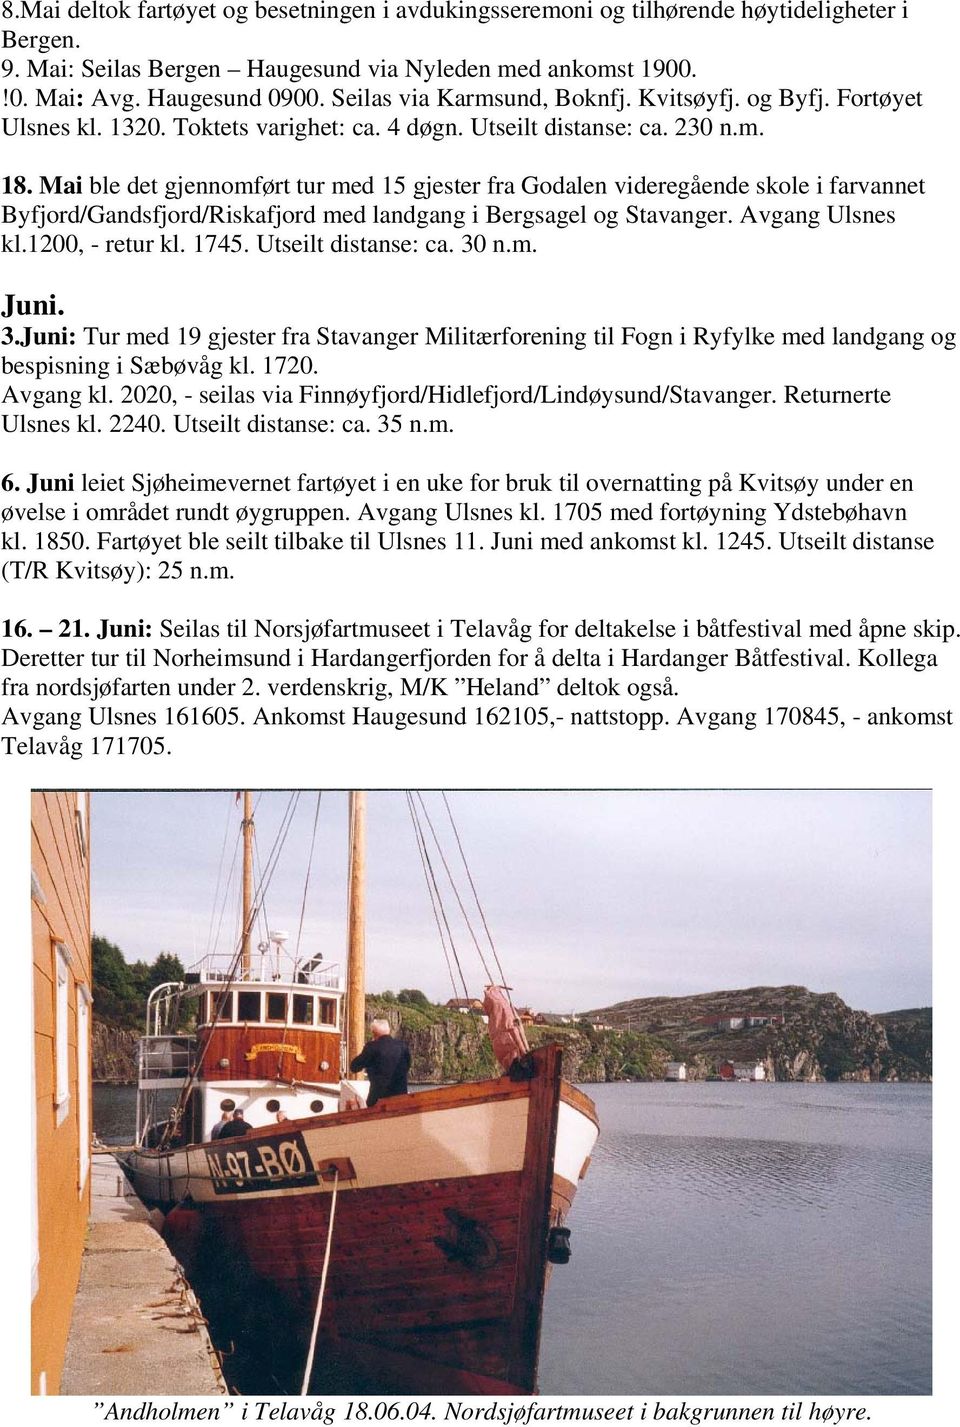 Mai ble det gjennomført tur med 15 gjester fra Godalen videregående skole i farvannet Byfjord/Gandsfjord/Riskafjord med landgang i Bergsagel og Stavanger. Avgang Ulsnes kl.1200, - retur kl. 1745.